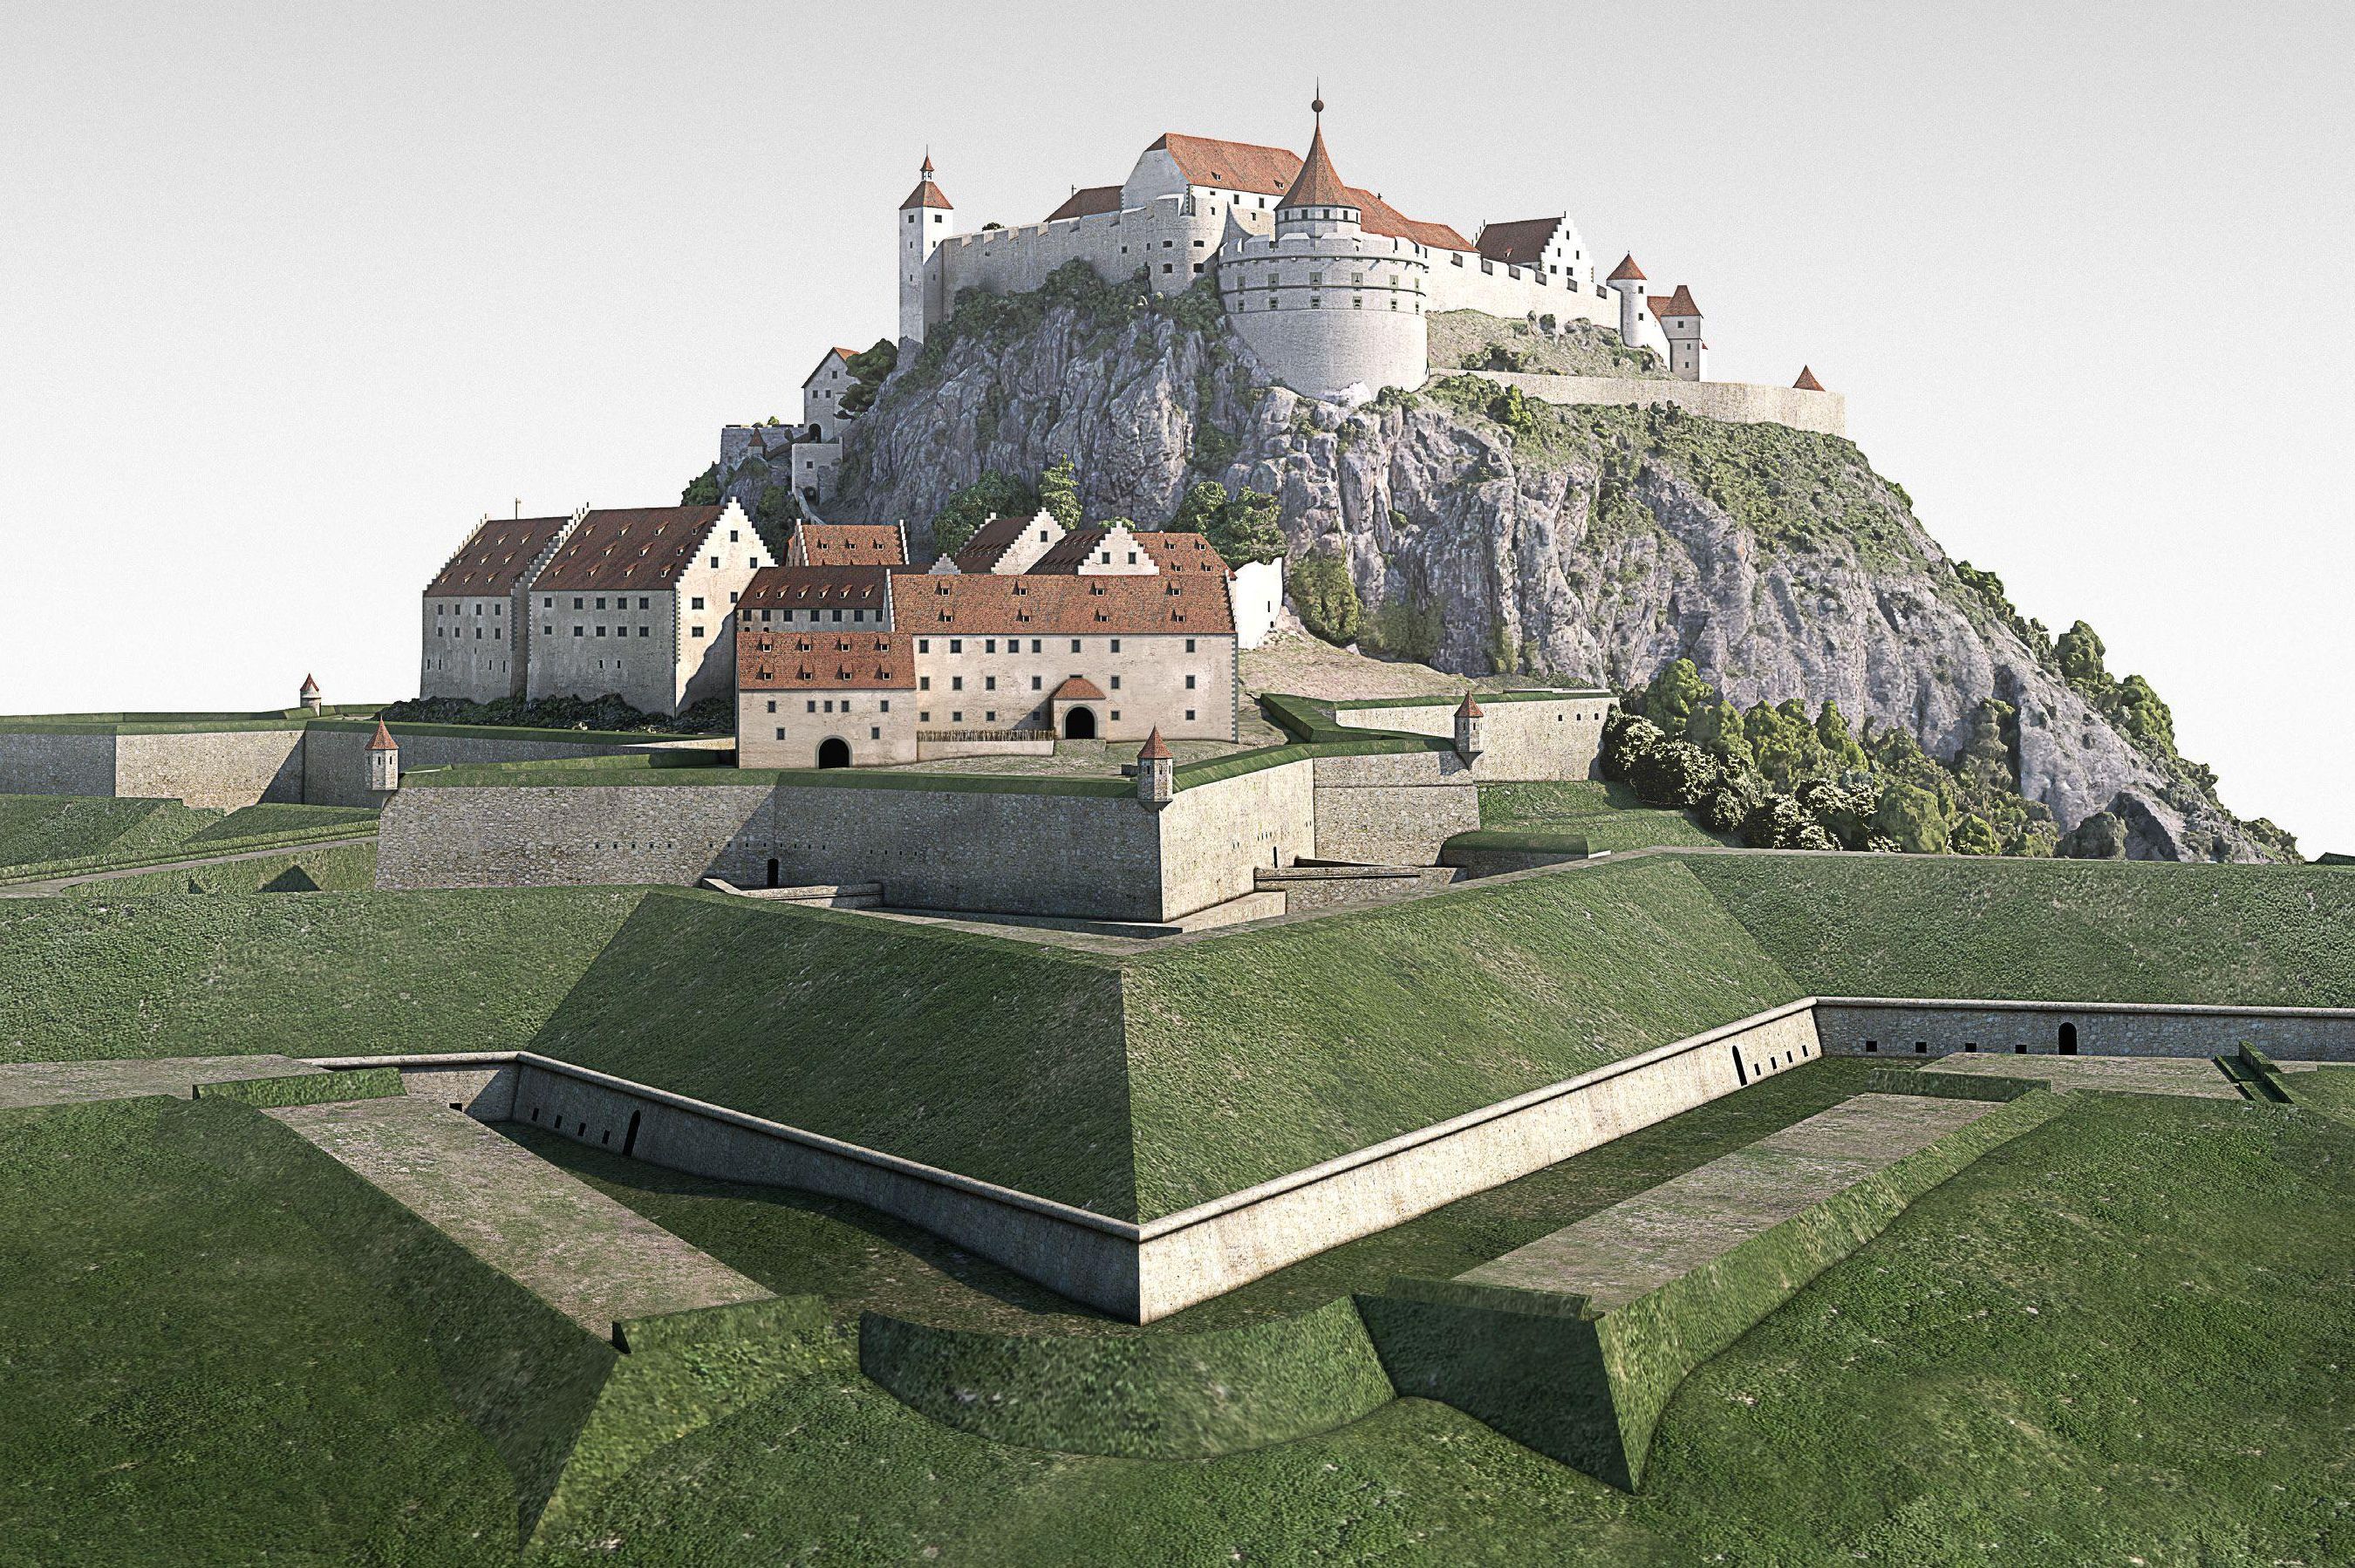 Digitales Gesamtmodell der Festungsruine Hohentwiel 